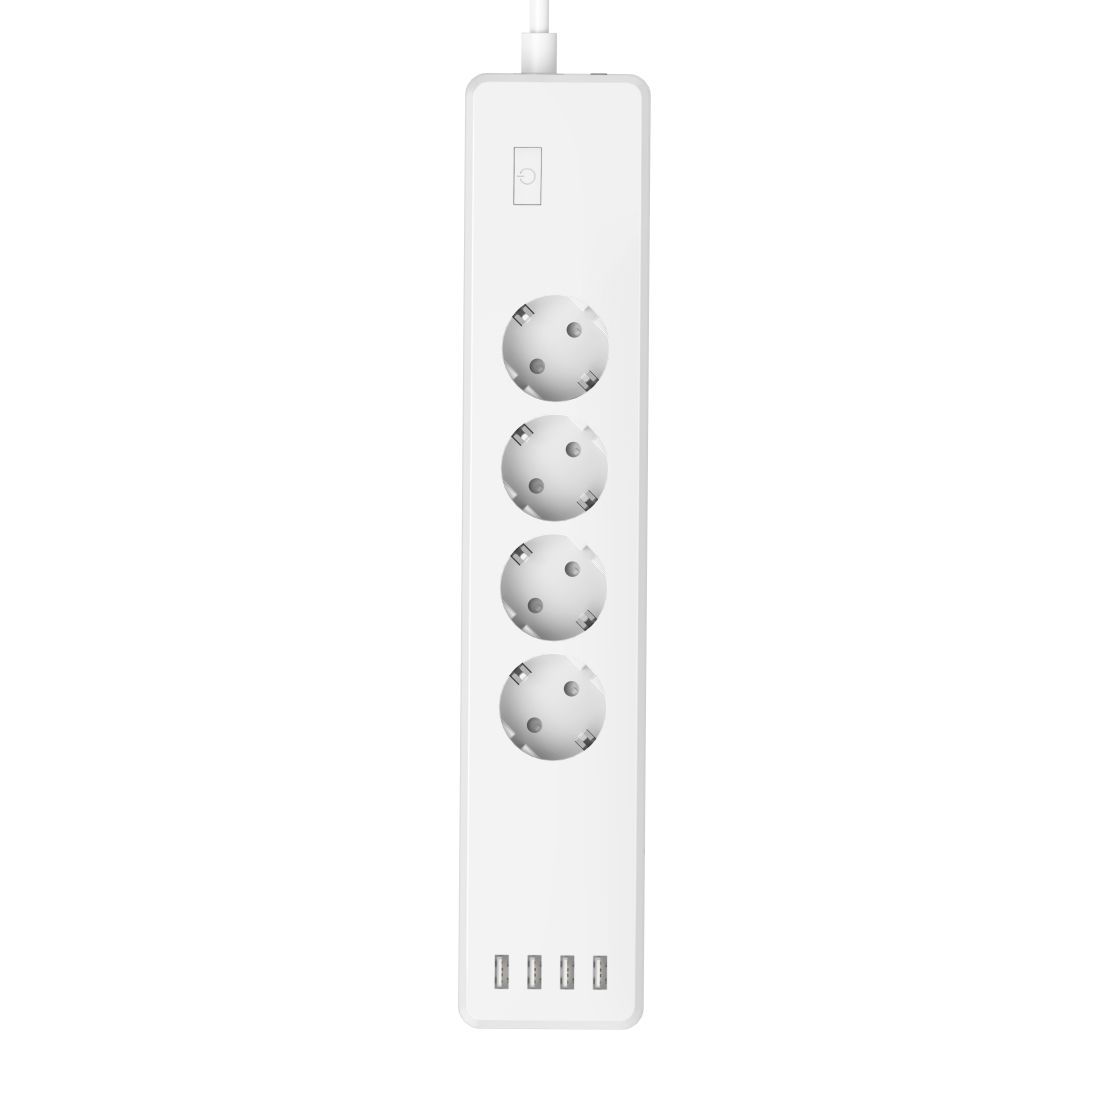 Enchufe WiFi HAMA con protección, 10 A, 4 USB ee 4 shuck, 1,5 mt, blanco - 176574 (176574)